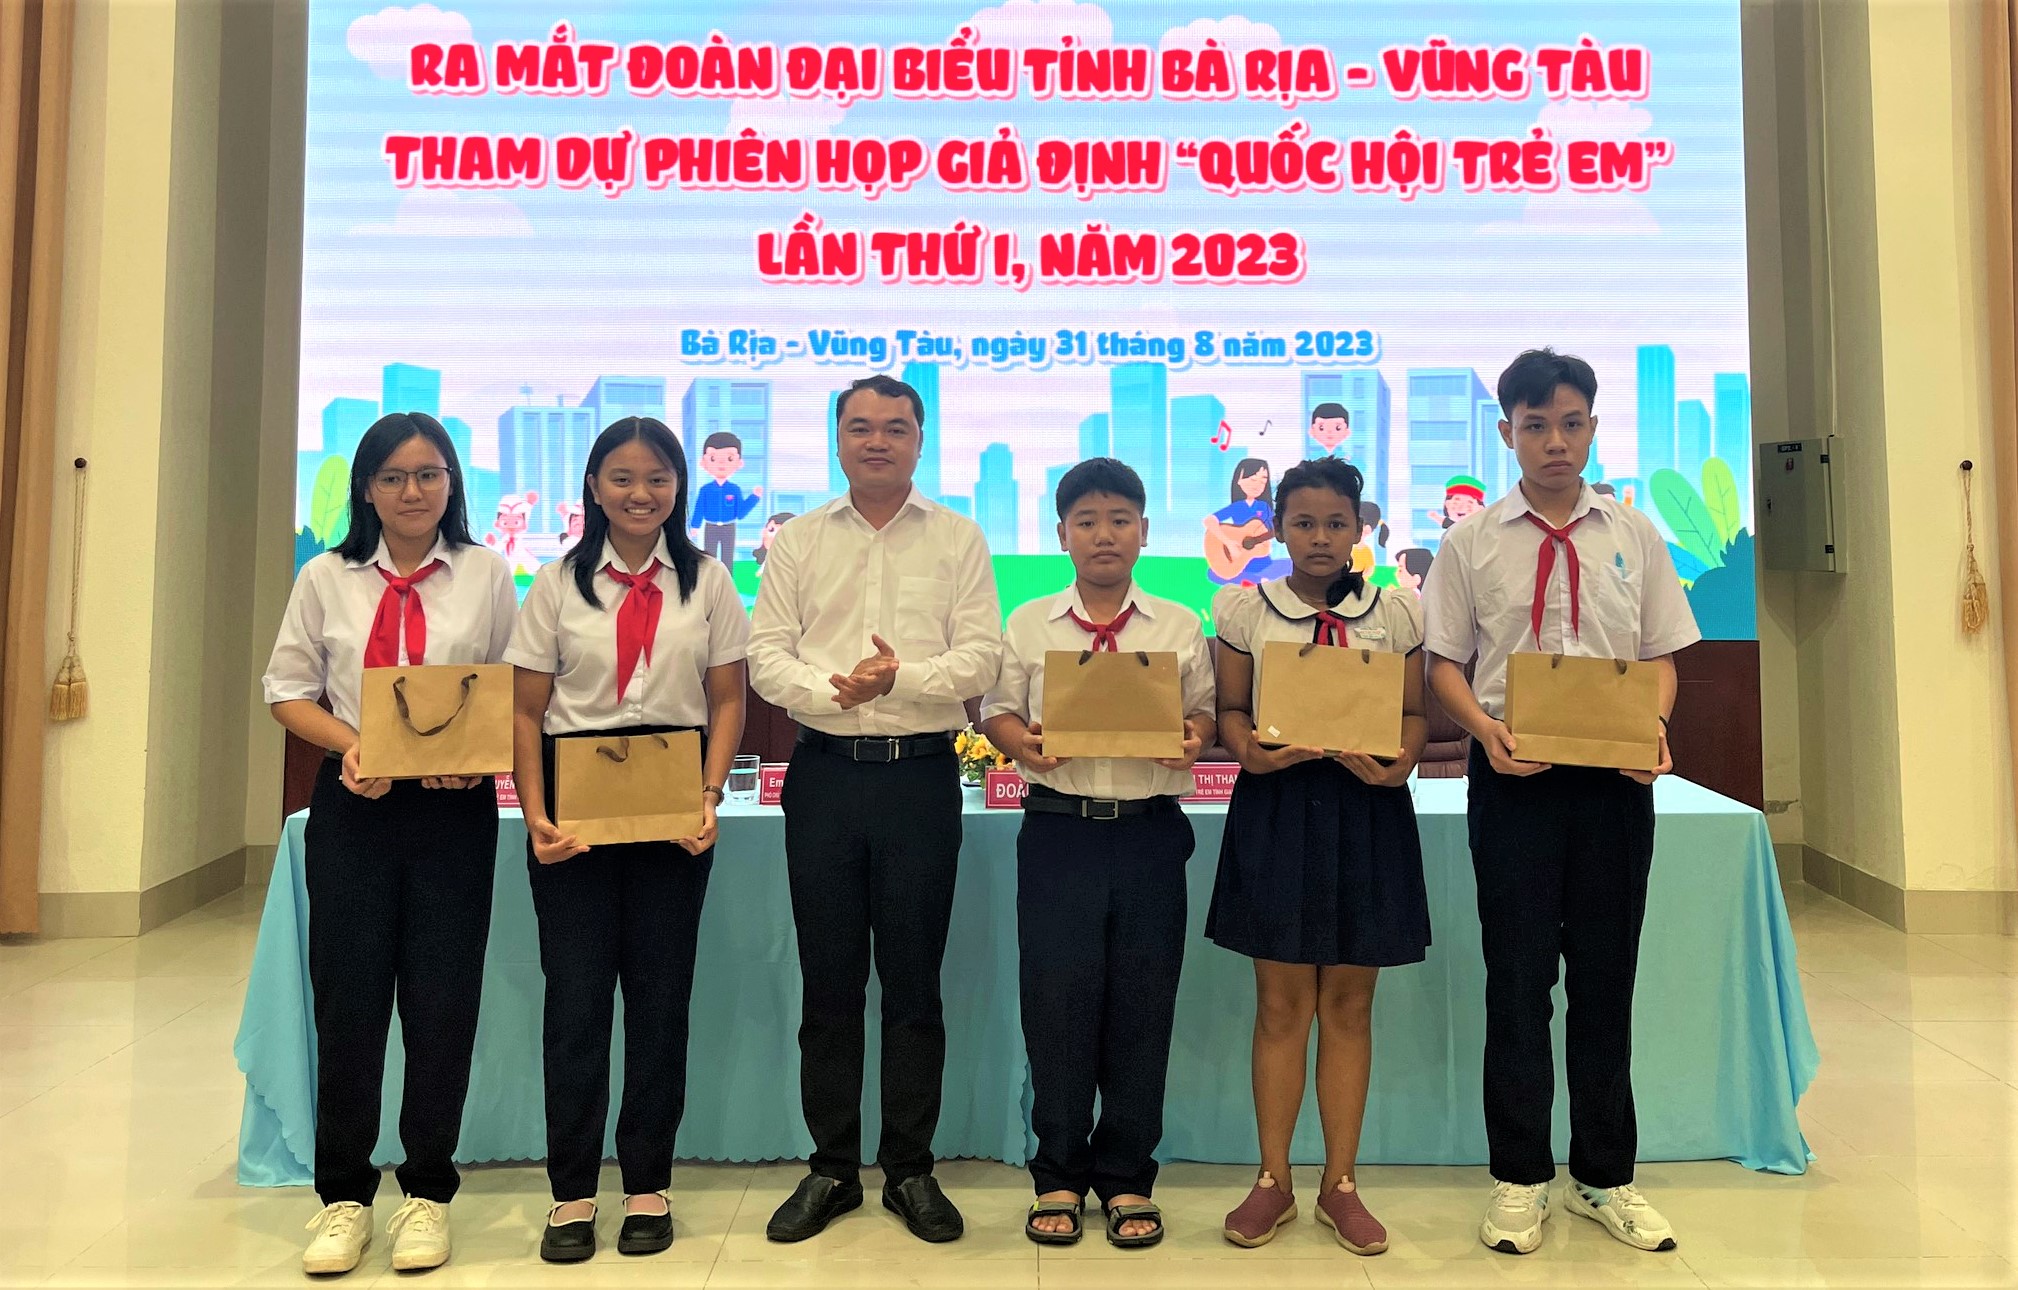 Anh Thôi Đại Việt, Chủ tịch Hội đồng Đội tỉnh tặng quà cho các đại biểu trẻ em tỉnh tham dự phiên họp giả định “Quốc hội trẻ em” lần thứ I năm 2023 tại lễ ra mắt.